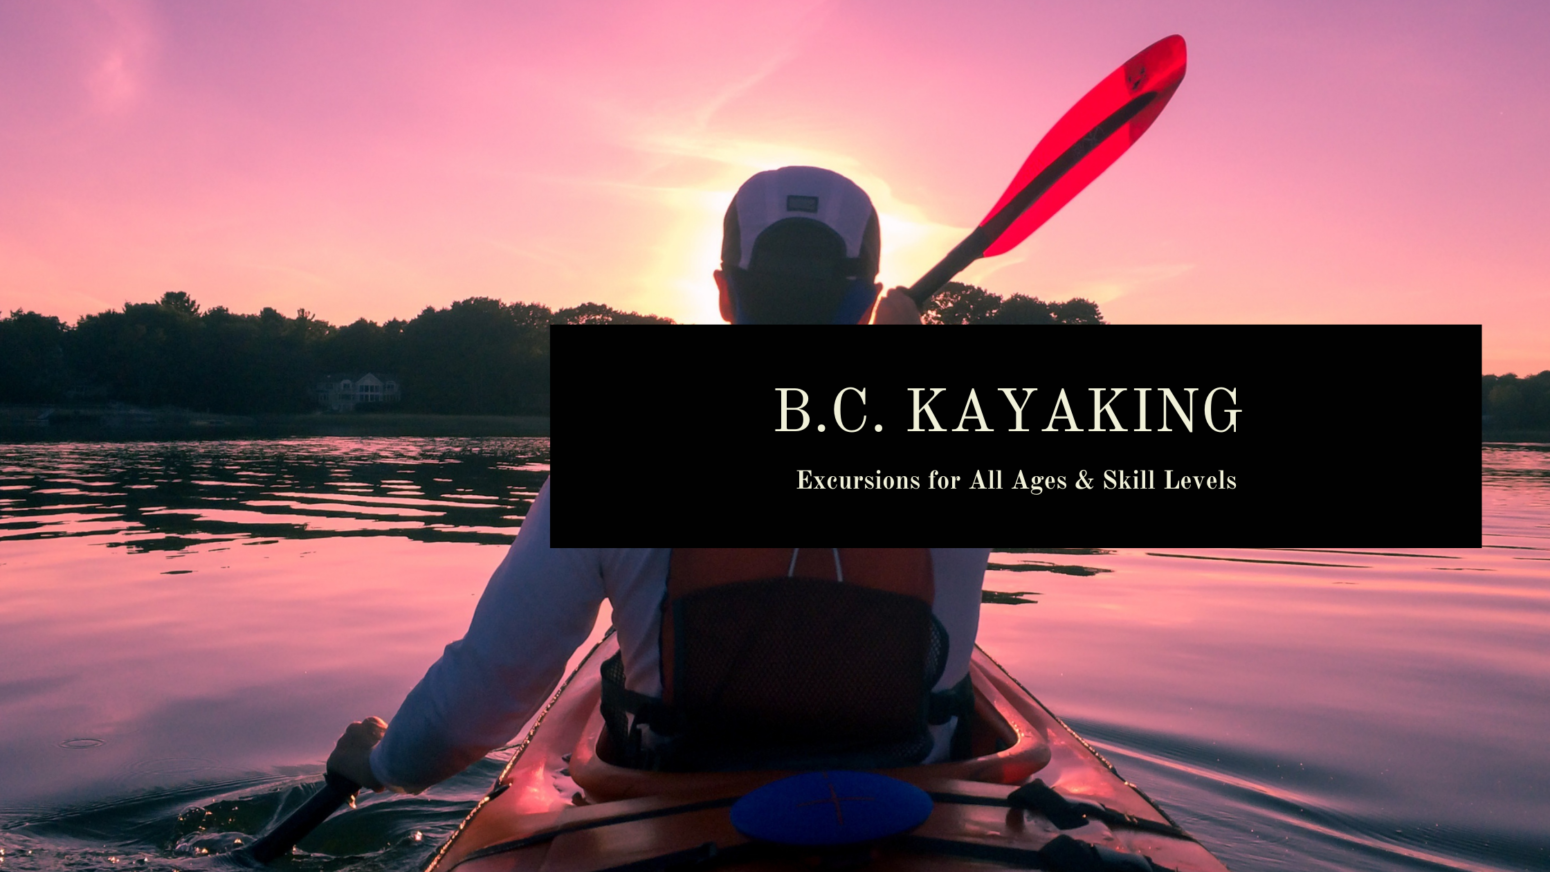 B.C. Kayaking